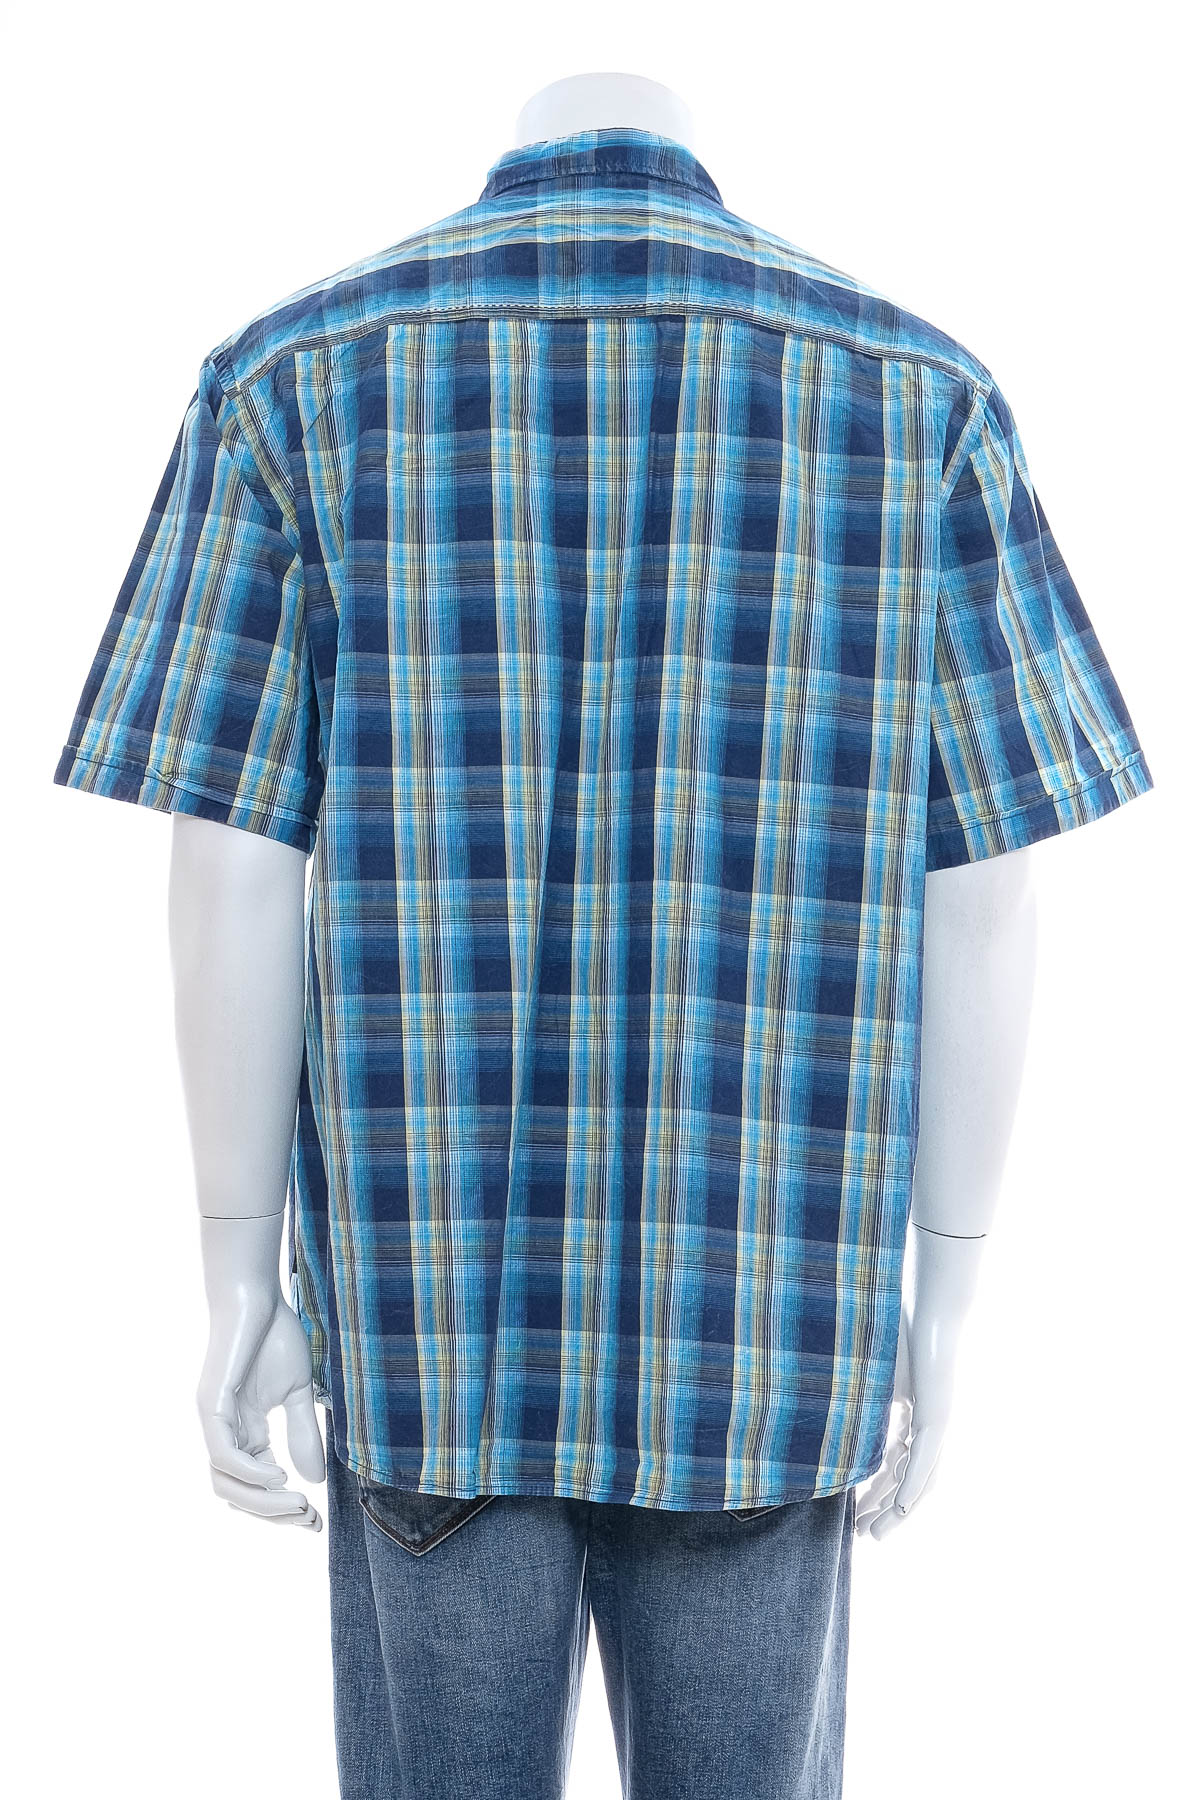 Ανδρικό πουκάμισο - Engbers - 1